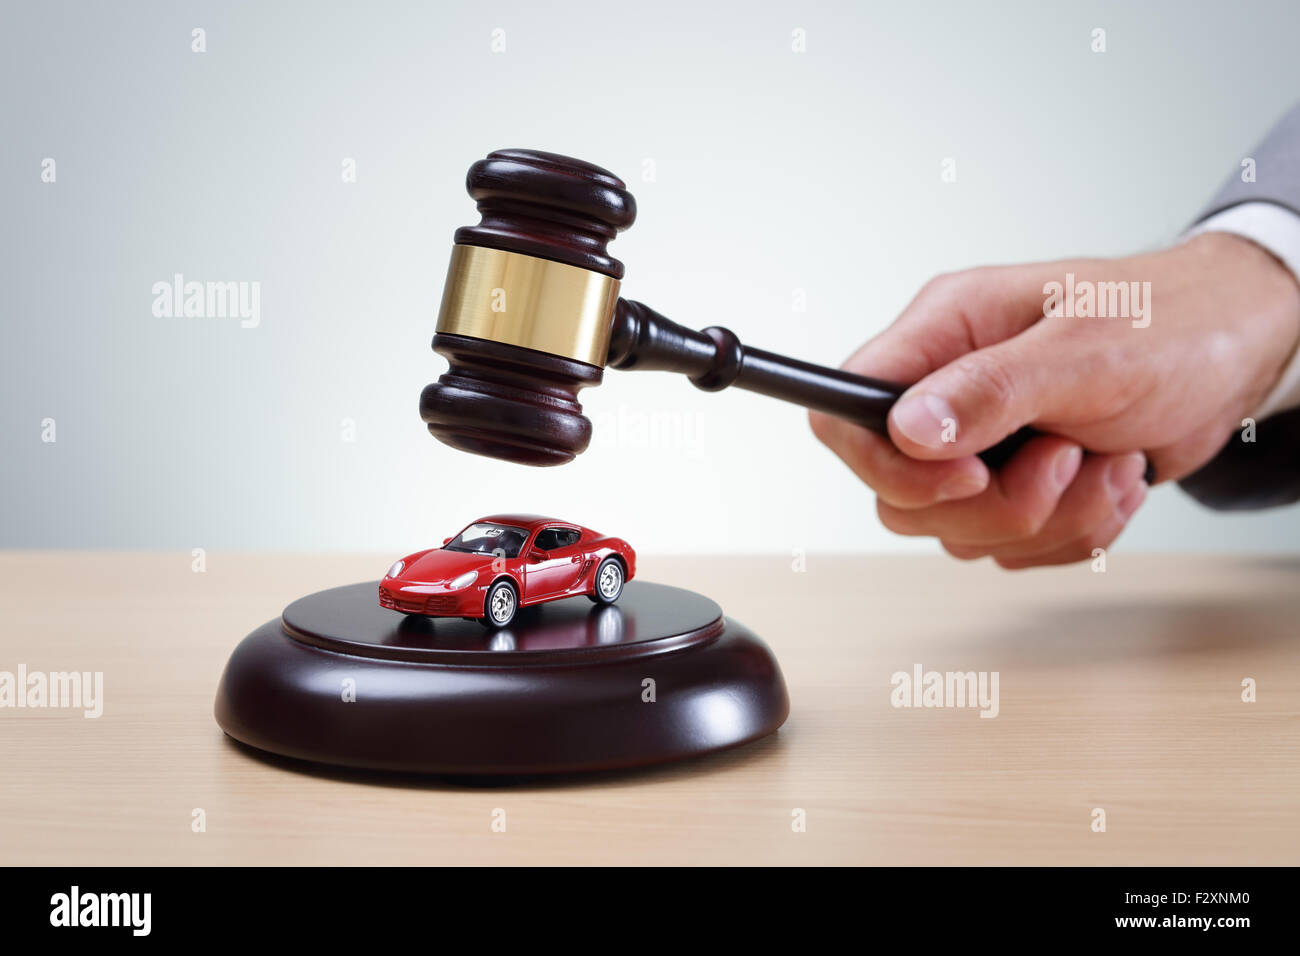 Hölzernen Hammer und das rote Auto Konzept für Kauf und Verkauf zur Auktion, Beschleunigung Überzeugung, erscheinen vor Gericht und Staatsanwaltschaft Stockfoto